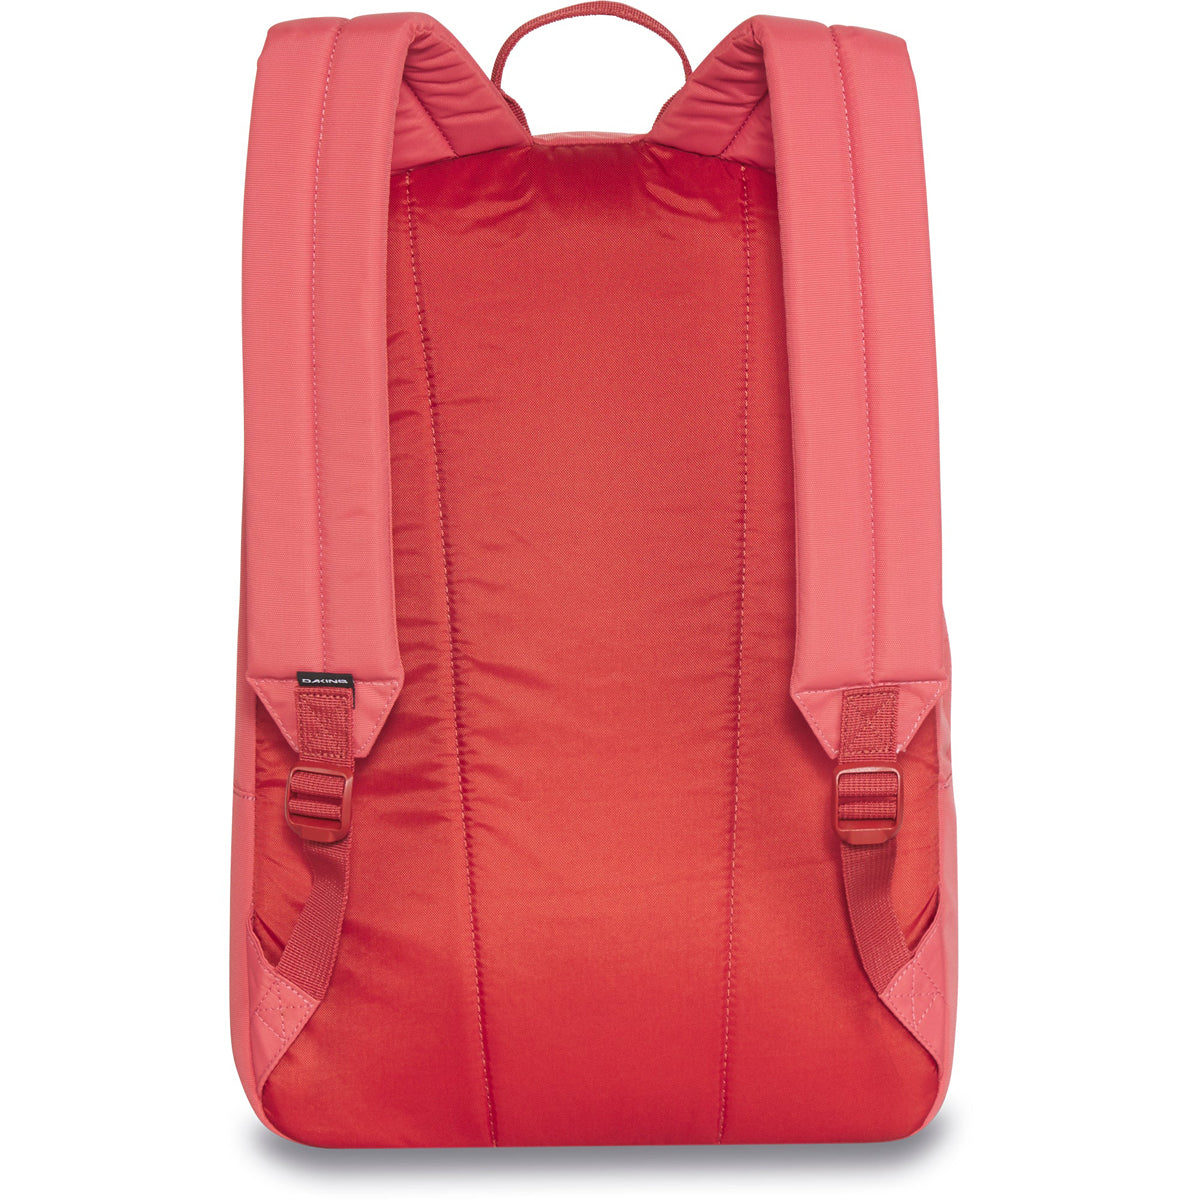 Dakine 365 Pack 21l Backpack - Mineral Red image 2